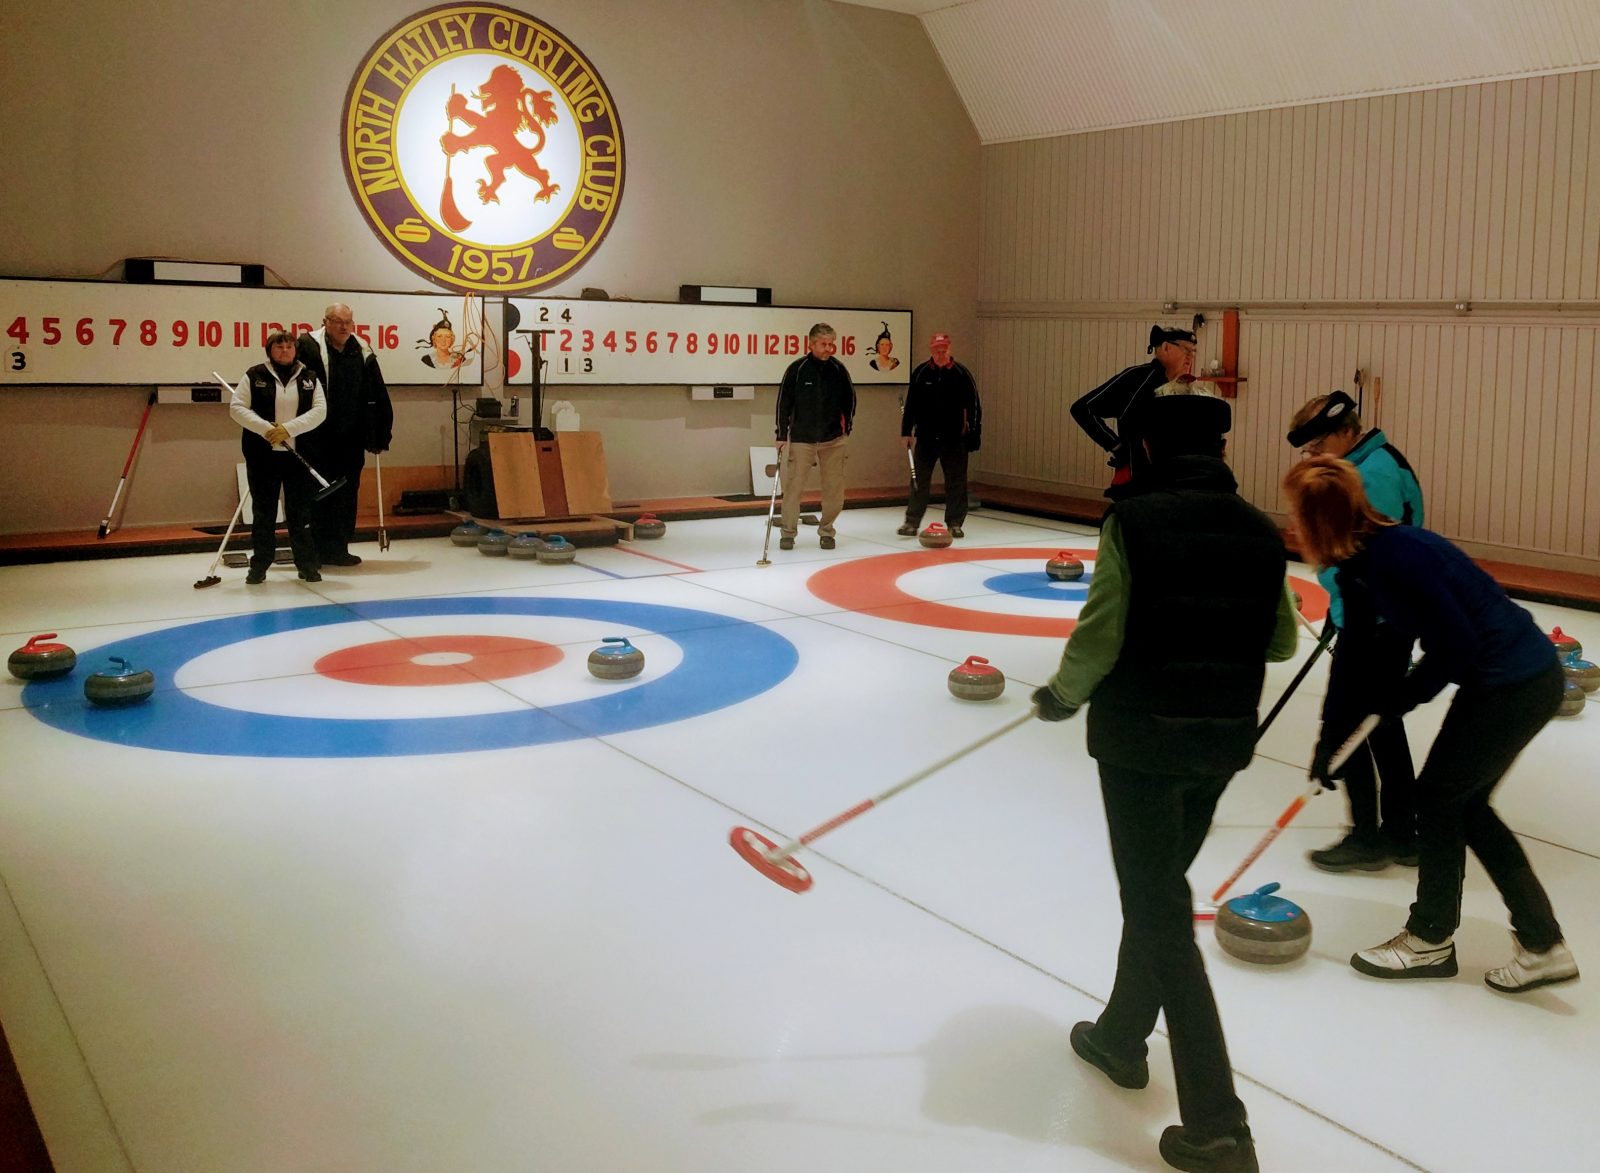 2018 curling begins